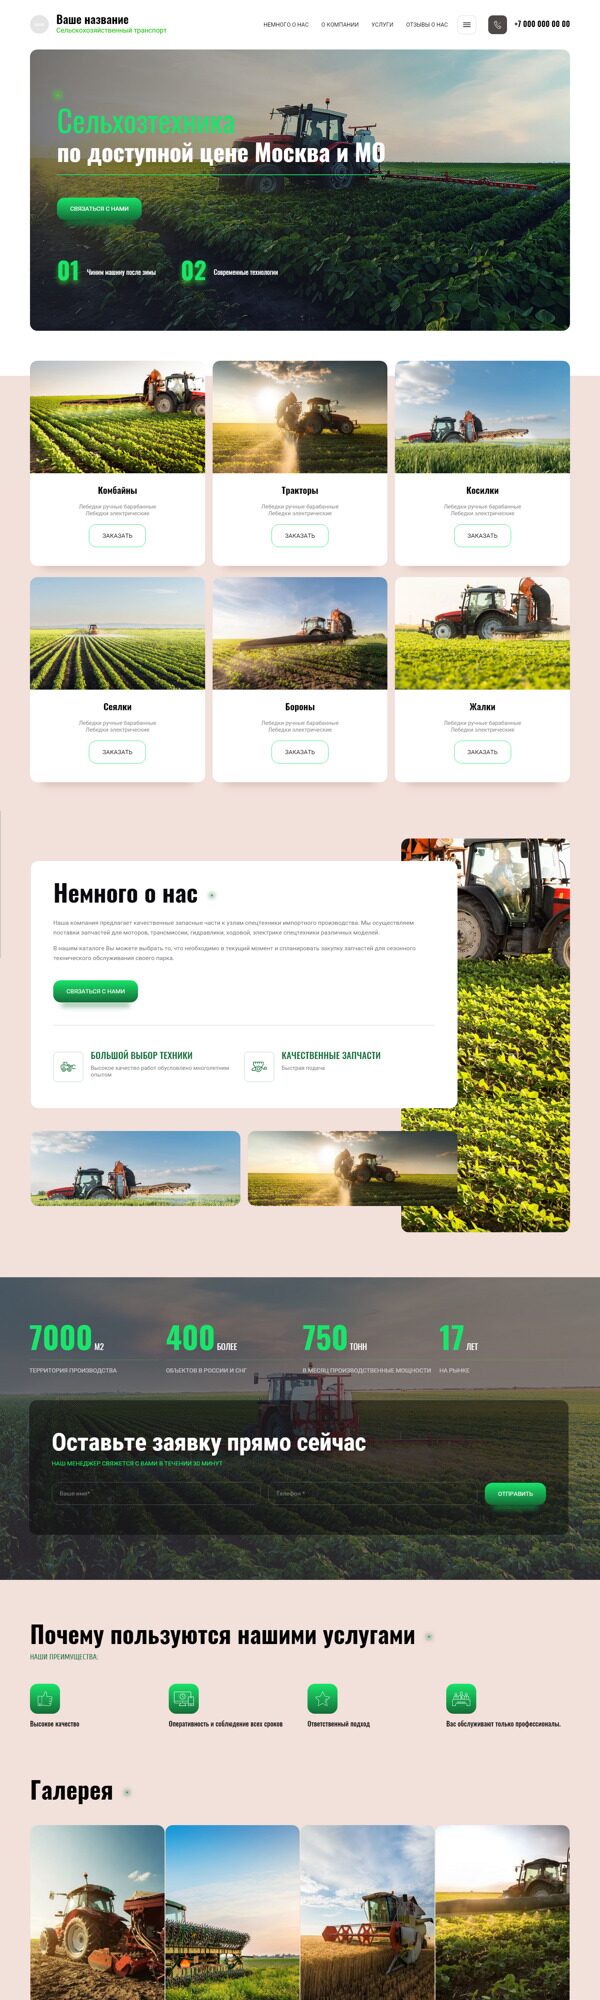 Готовый Сайт-Бизнес № 3994885 - Сельхозтехника (Десктопная версия)